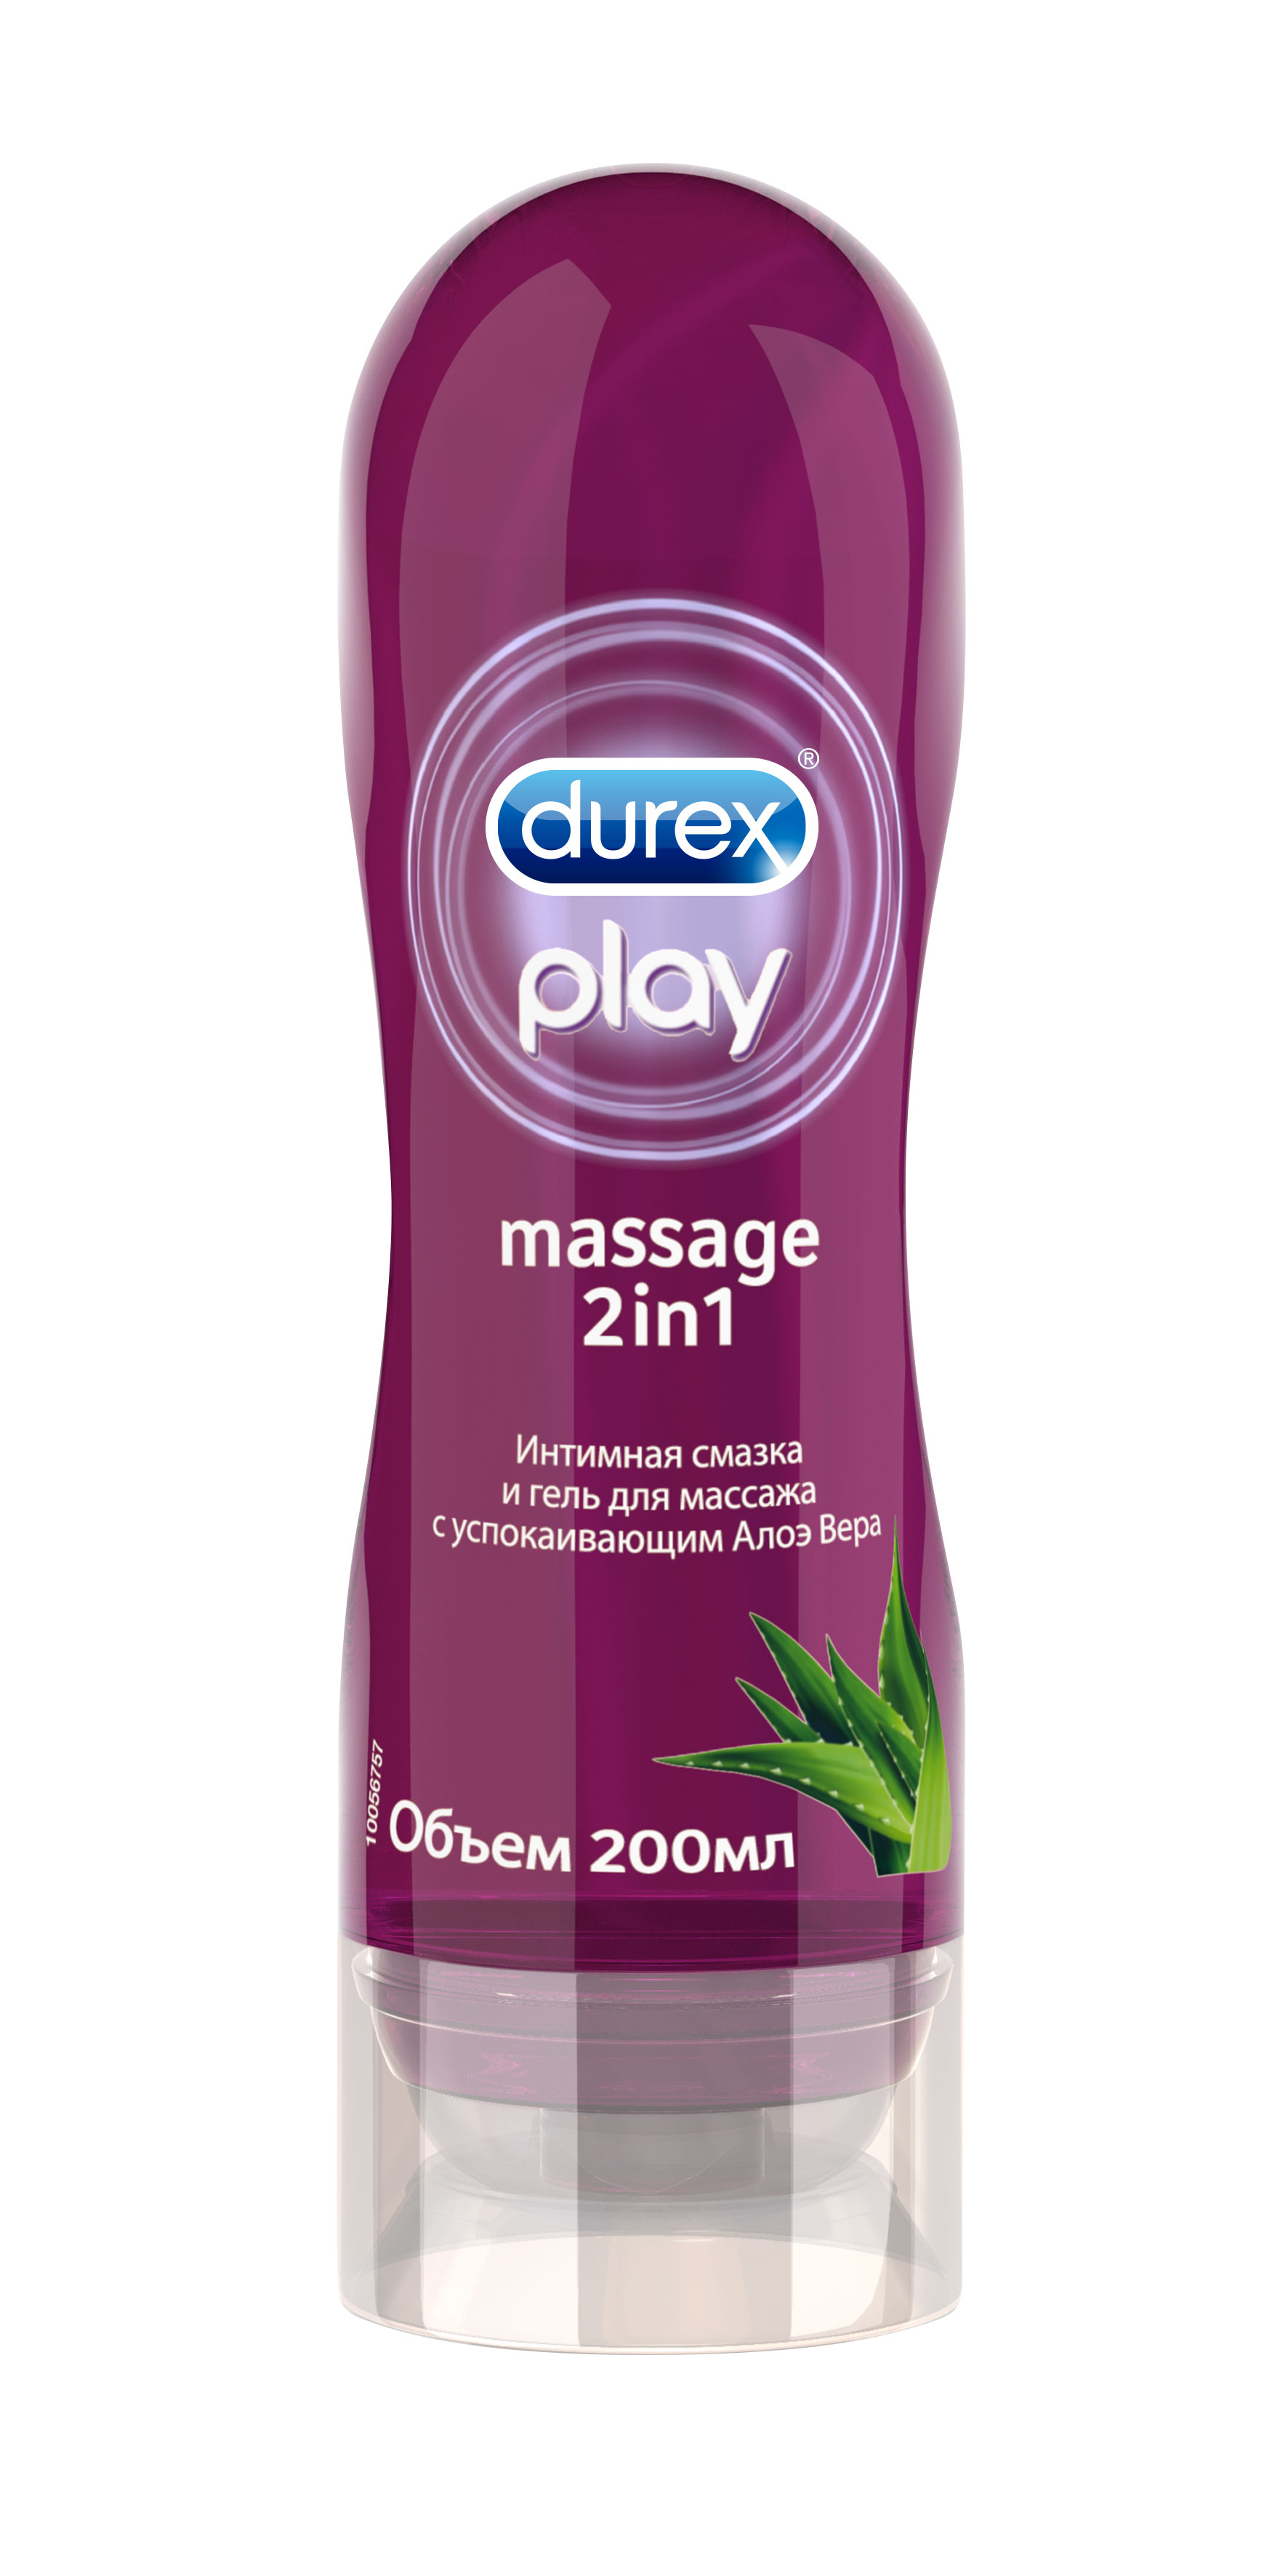 Durex play massage. Гель-смазка Durex Play massage 2in1 sensual.